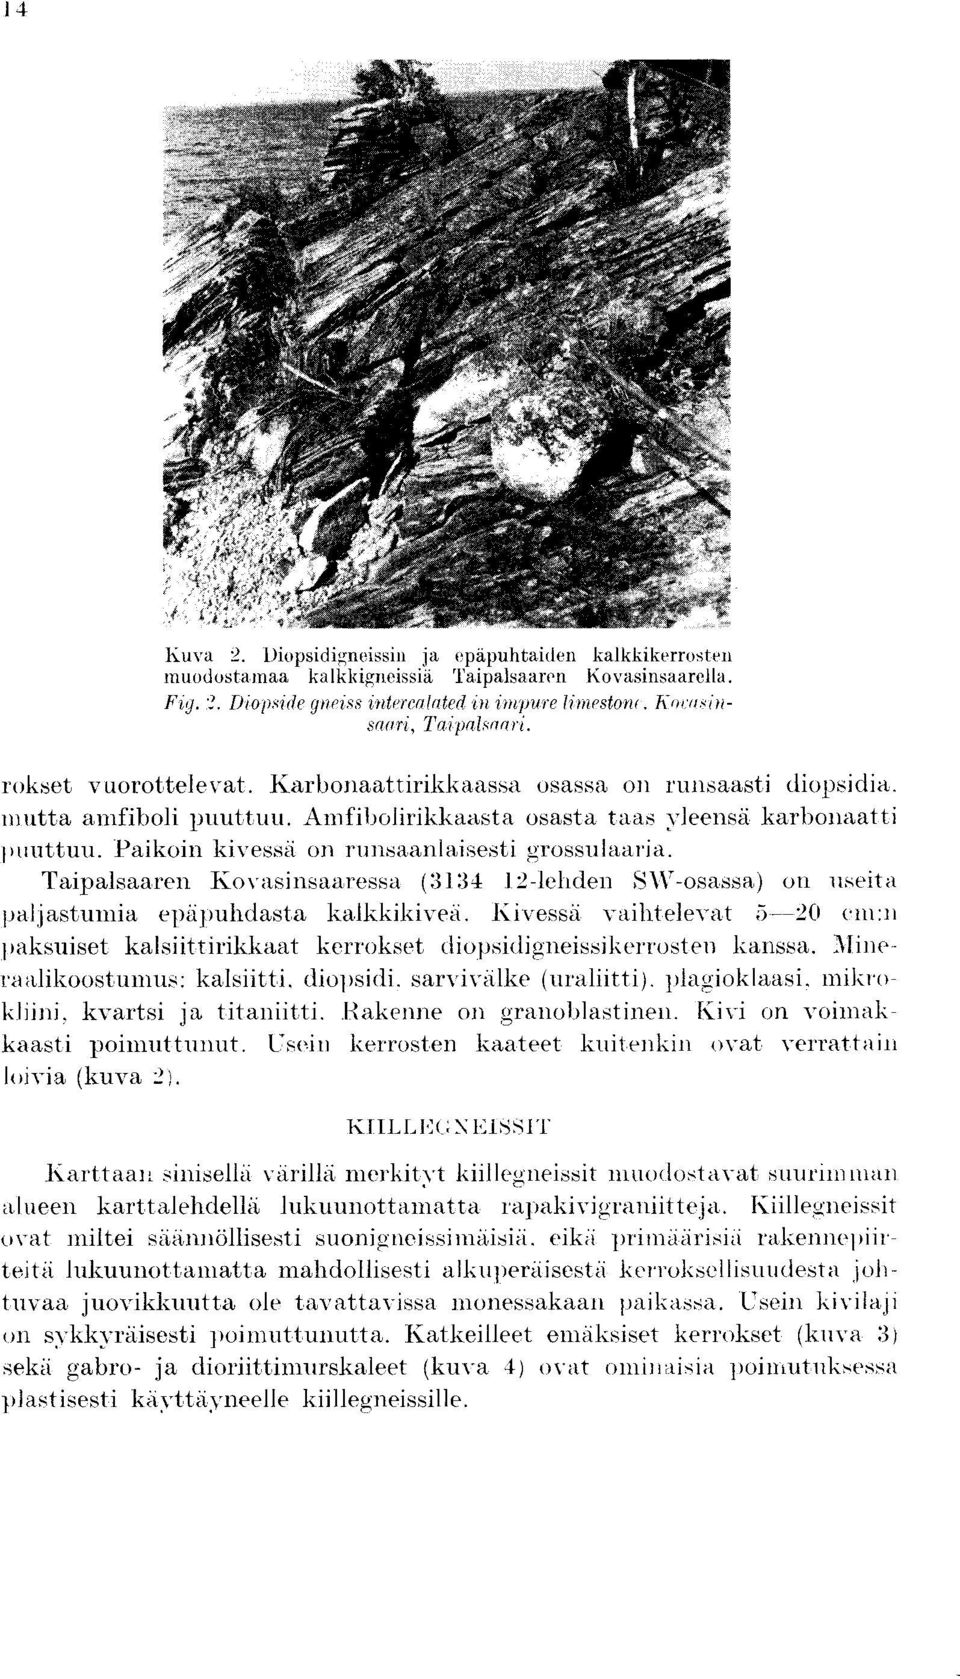 Paikoin kivessd on runsaanlaisesti grossulaaria. Taipalsaaren Kovasinsaaressa (3134 12-leliden 5\V-osassa) on useita paijastumia epapuhdasta kalkkikivea.